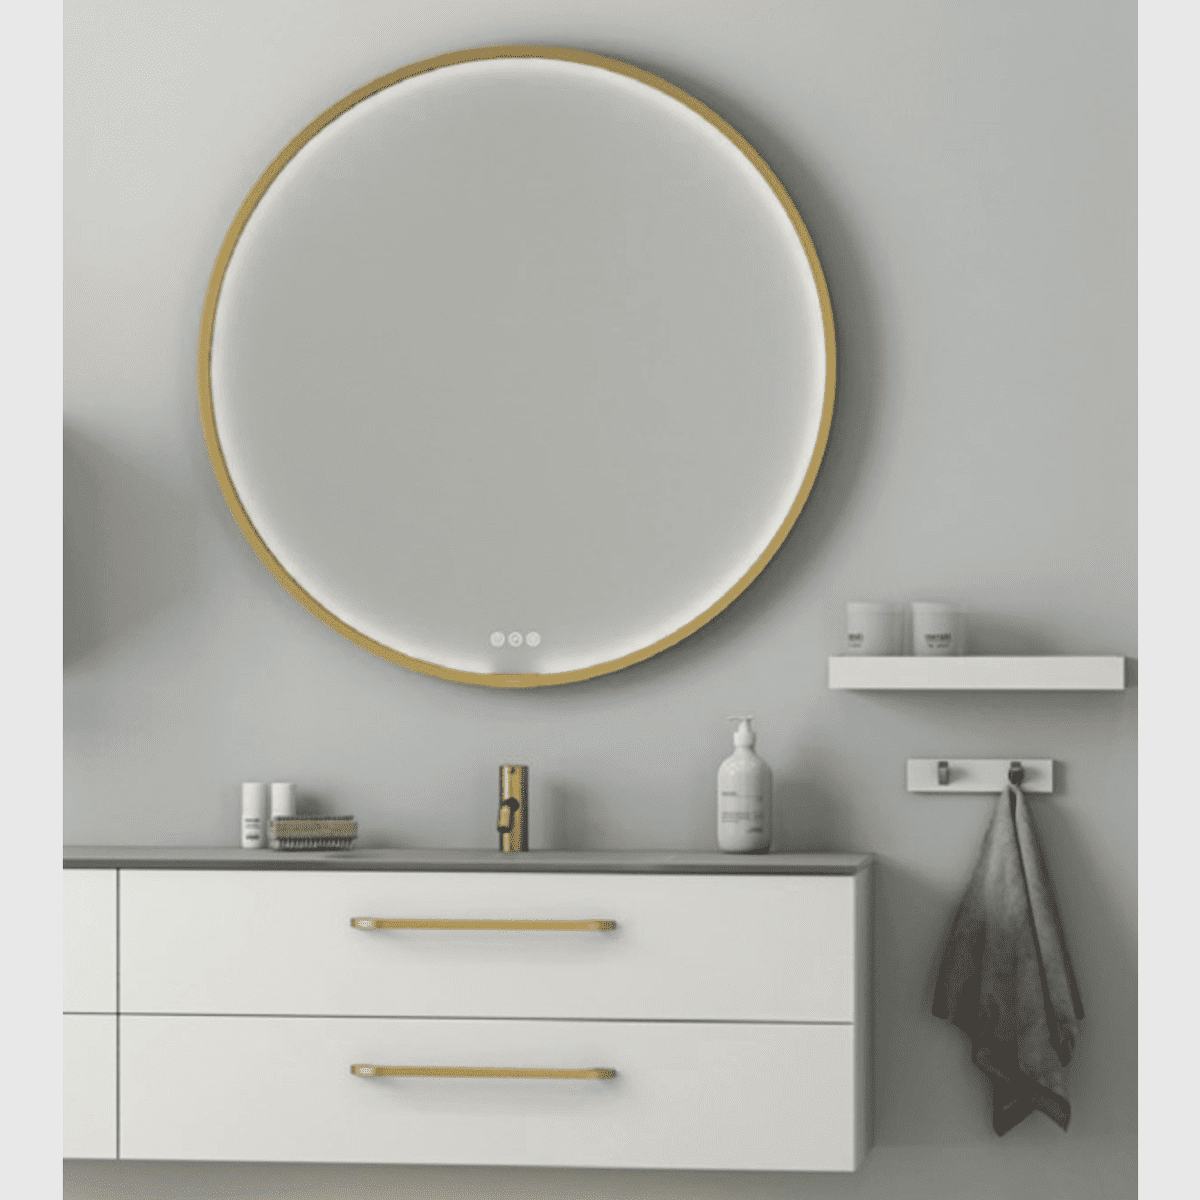 Se Dansani Rundt Moon spejl med ramme og lys hos Bad&Design